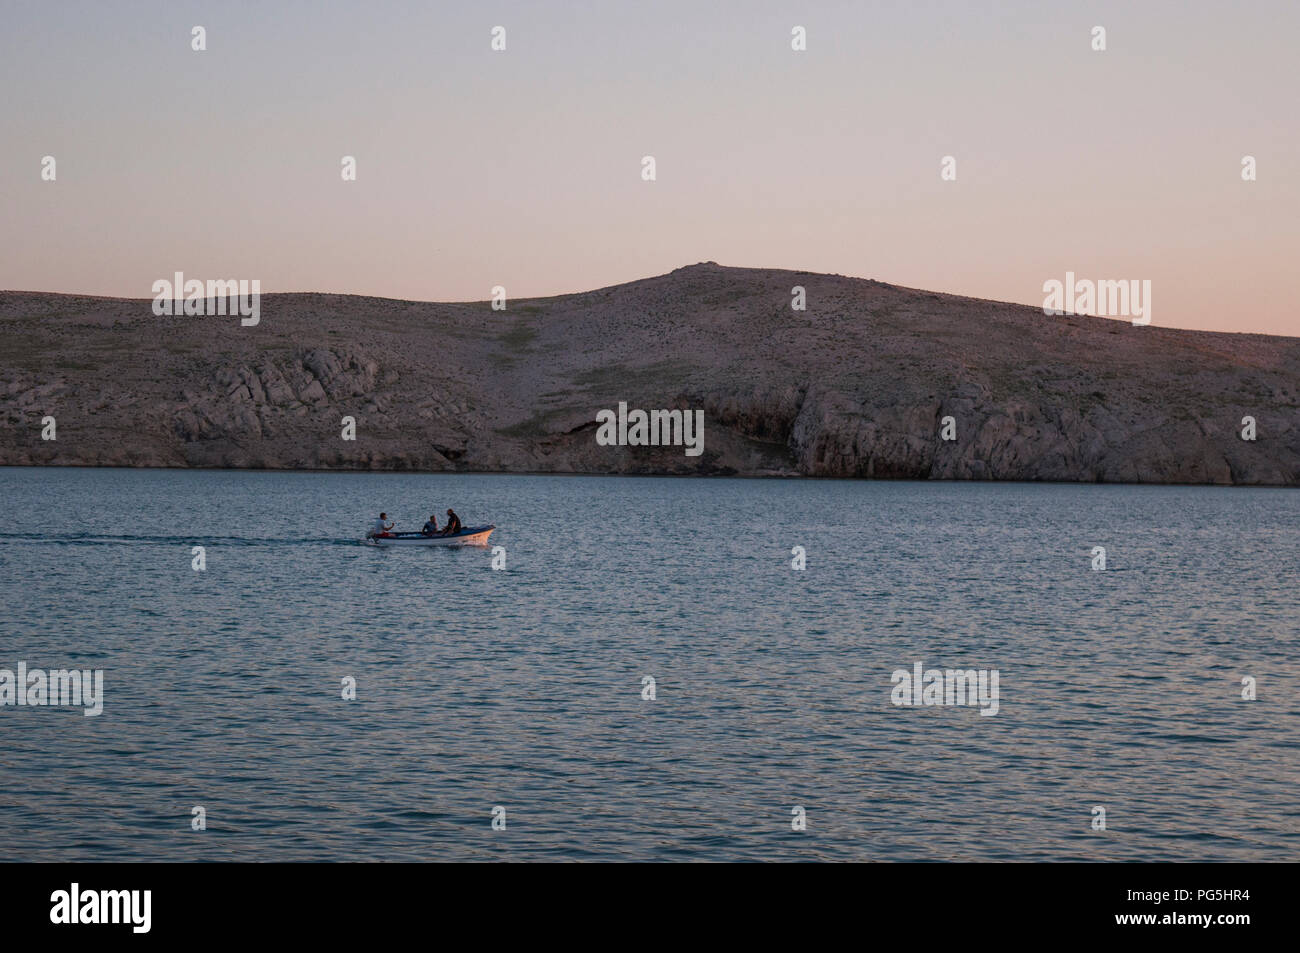 Croazia, Europa: ishermen su una barca al tramonto sull'isola di Pag, la quinta più grande isola della costa croata del Mare Adriatico settentrionale Foto Stock